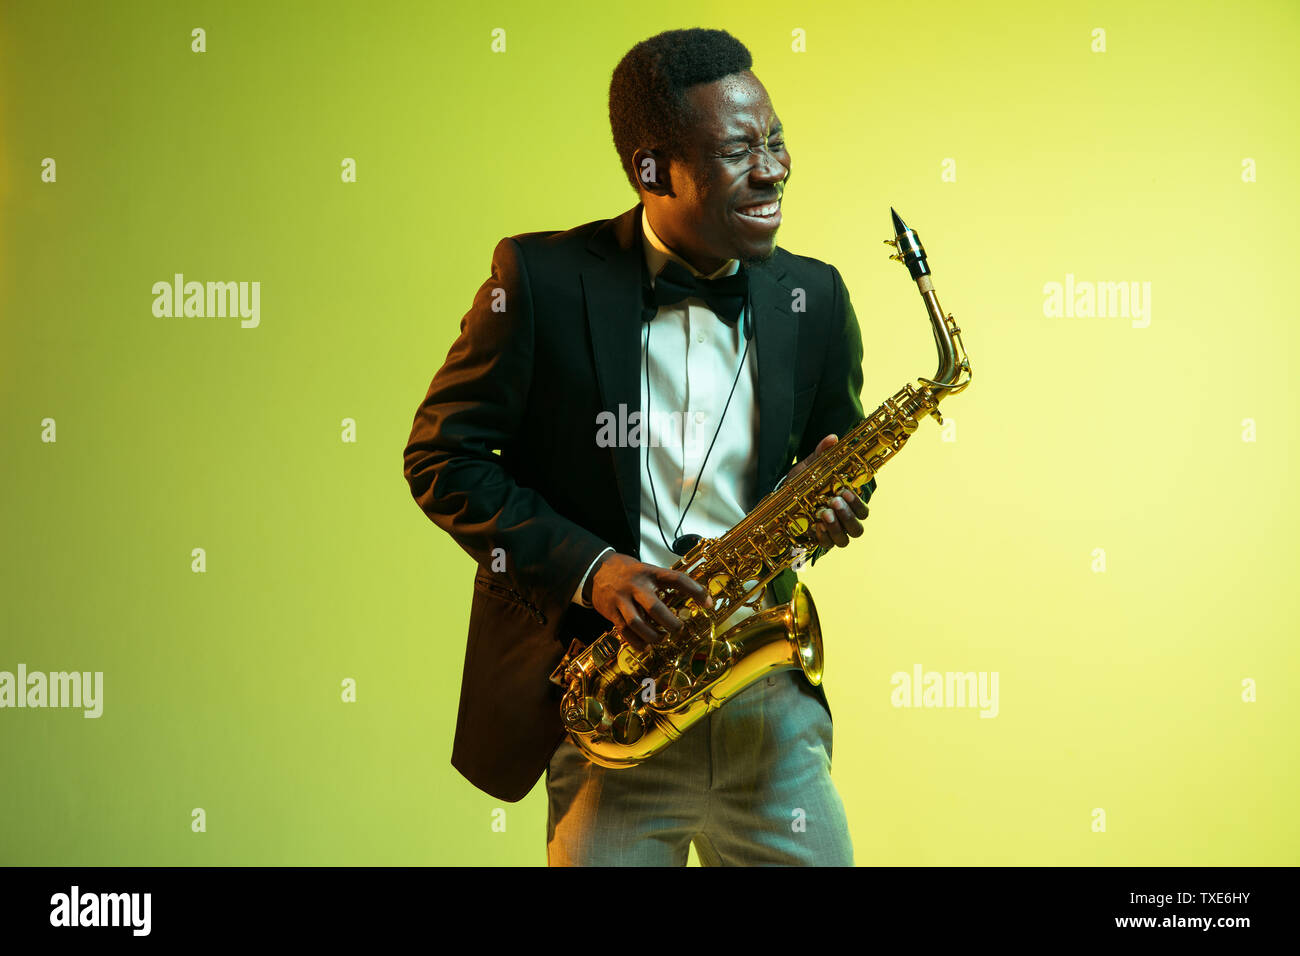 Les jeunes africains-américains musicien de jazz jouant du saxophone sur jaune-vert dégradé fond studio. Concept de la musique, passe-temps, festival. Guy attrayant. improvisation joyeuse Portrait de l'artiste en couleurs. Banque D'Images